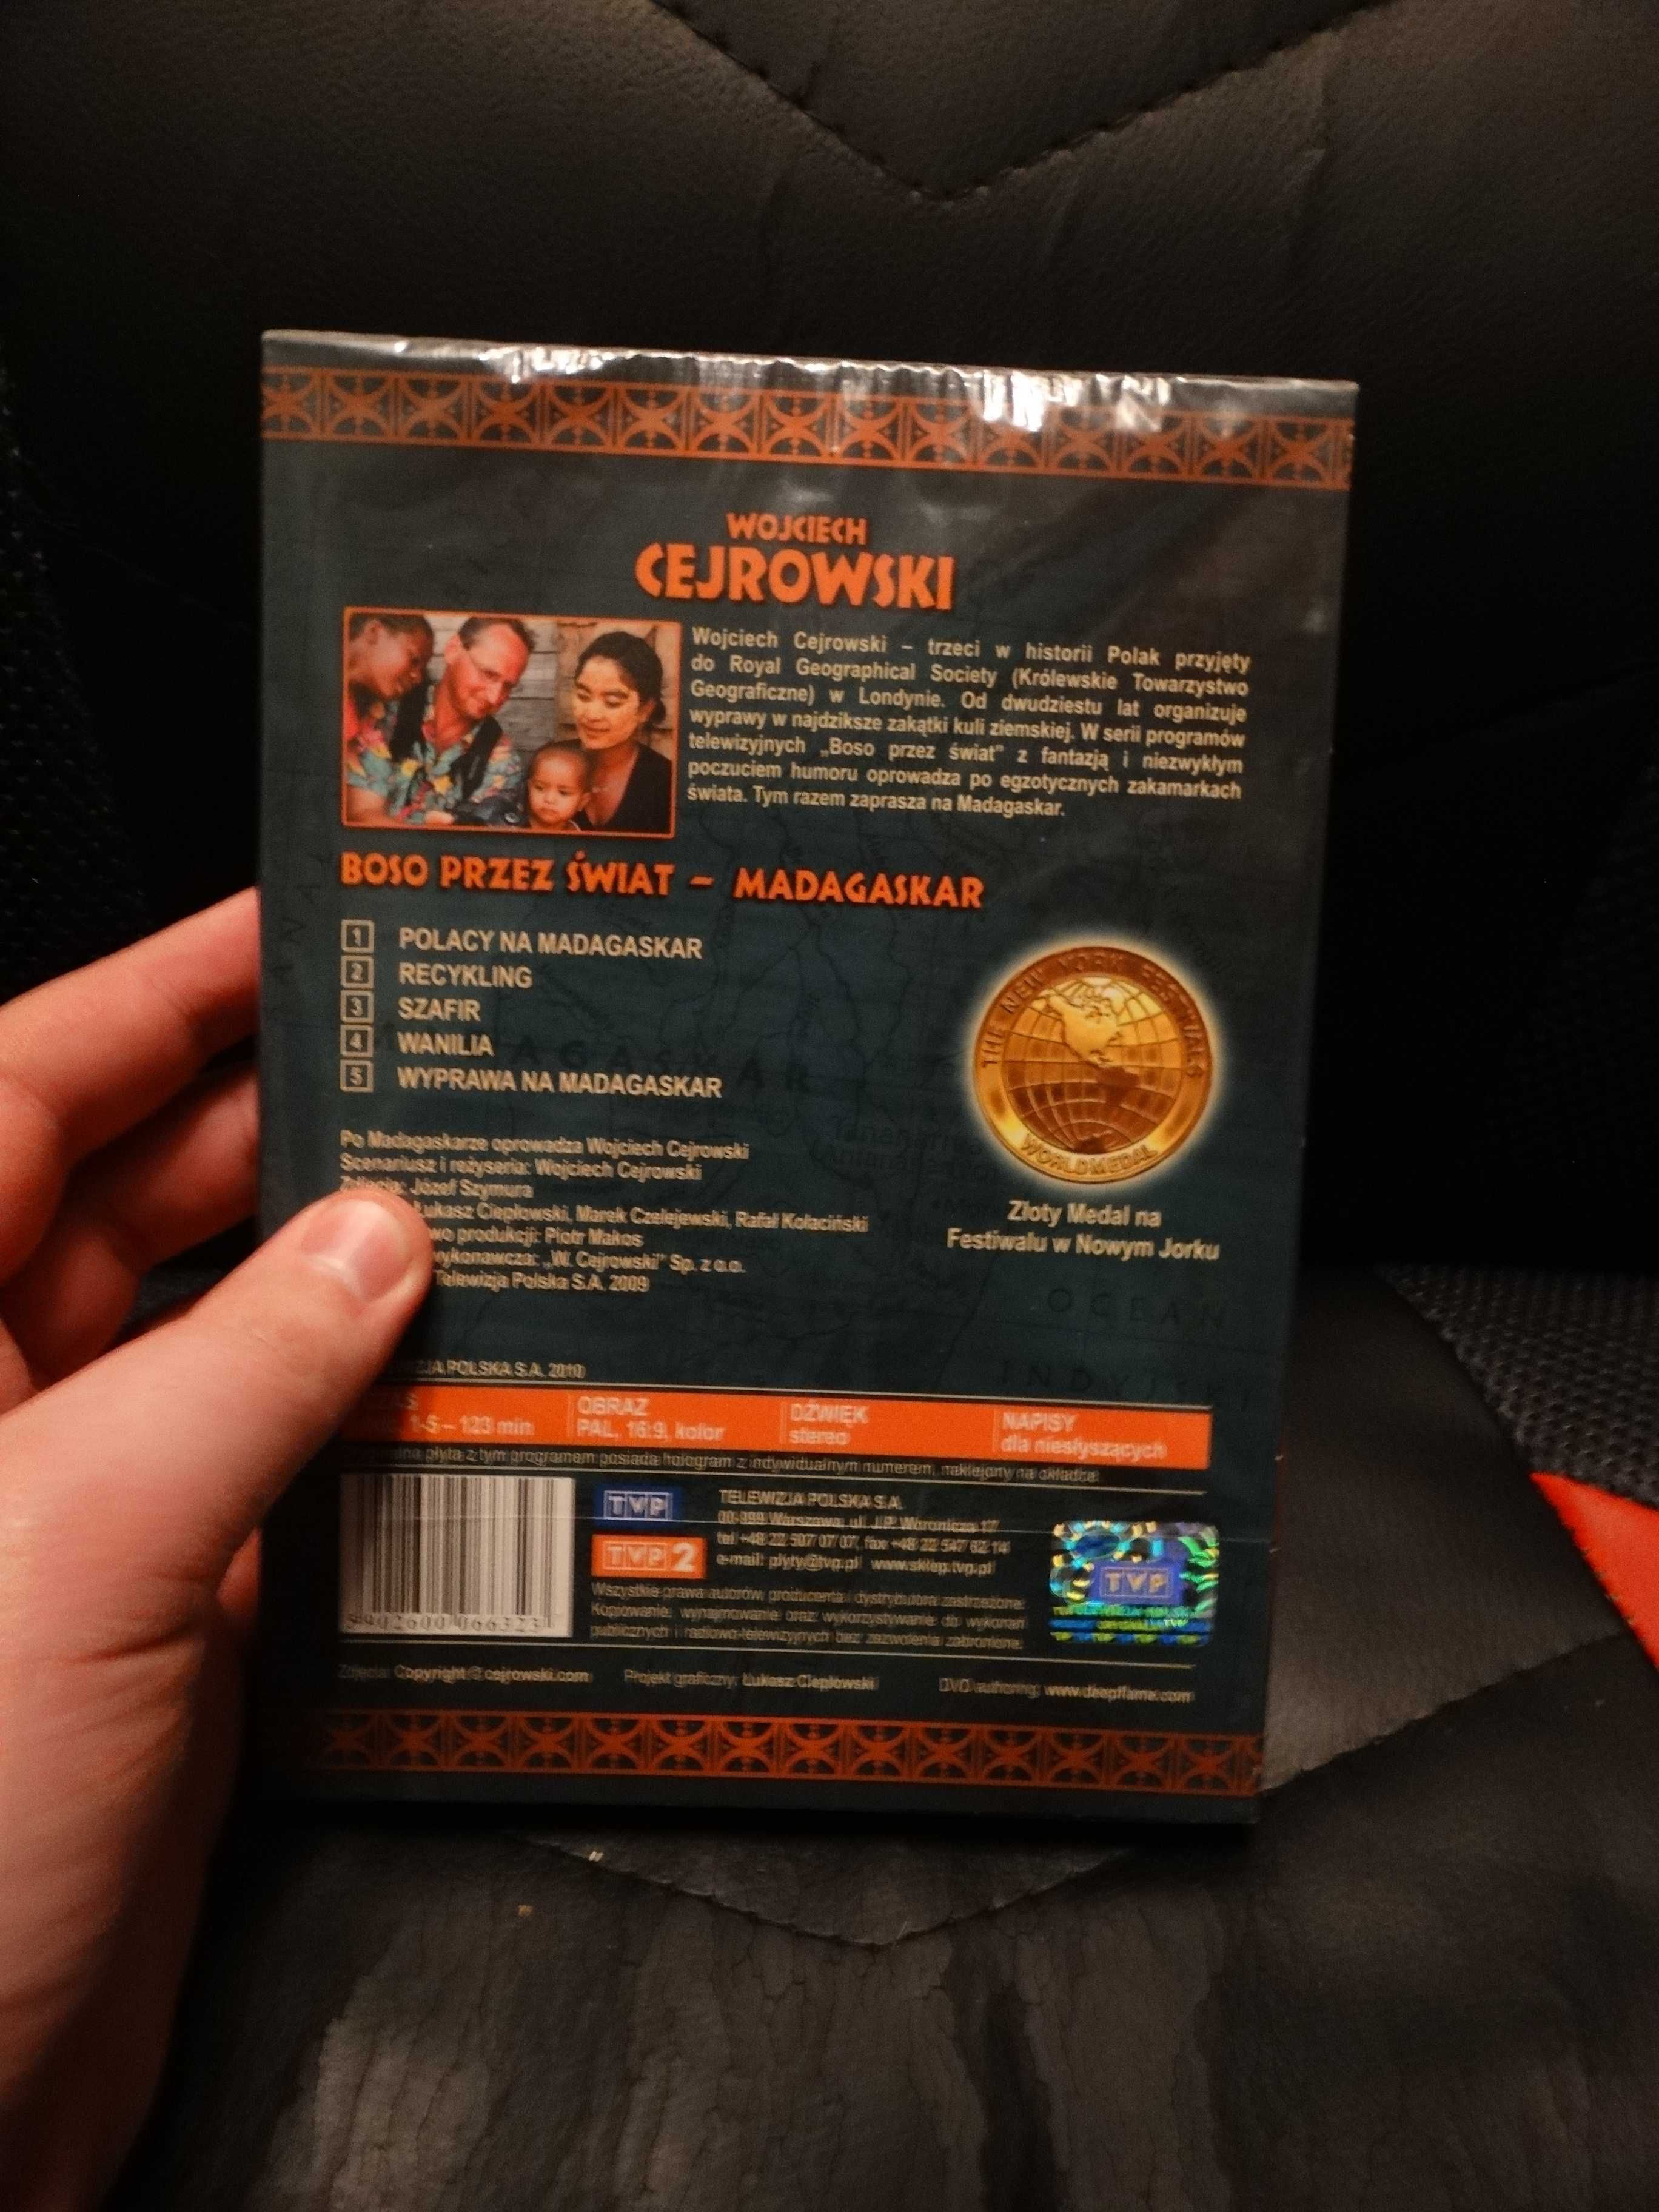 DVD Wojciech Cejrowski boso przez świat Madagaskar